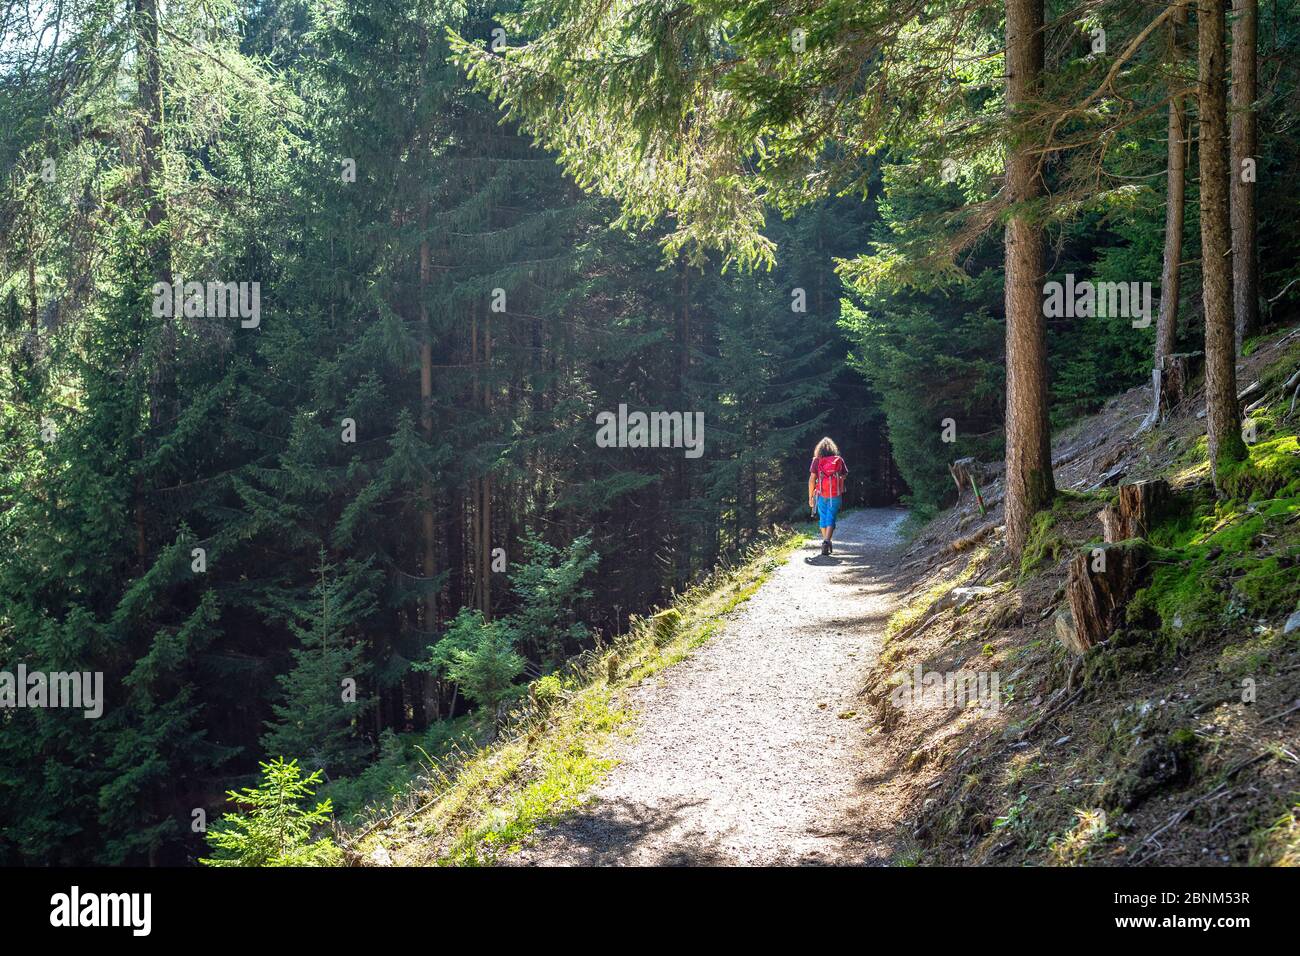 Europe, Austria, Tyrol, Stubai Alps, Neustift im Stubaital, woman hikes through a mountain forest to the Gschmitz natural site in the Stubai Valley Stock Photo